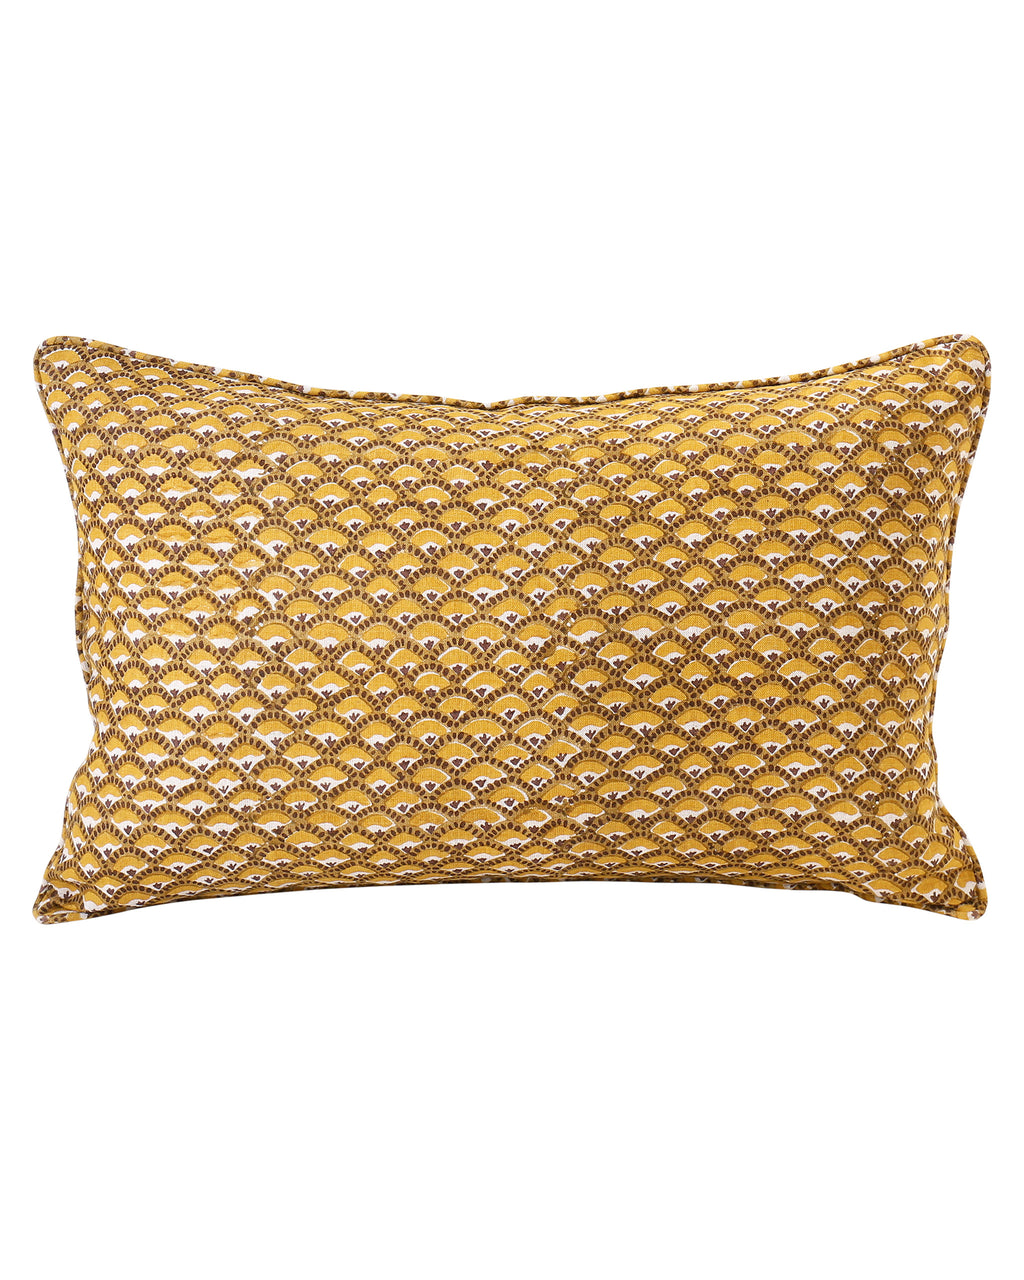 Naples Spice linen cushion 35x55cm